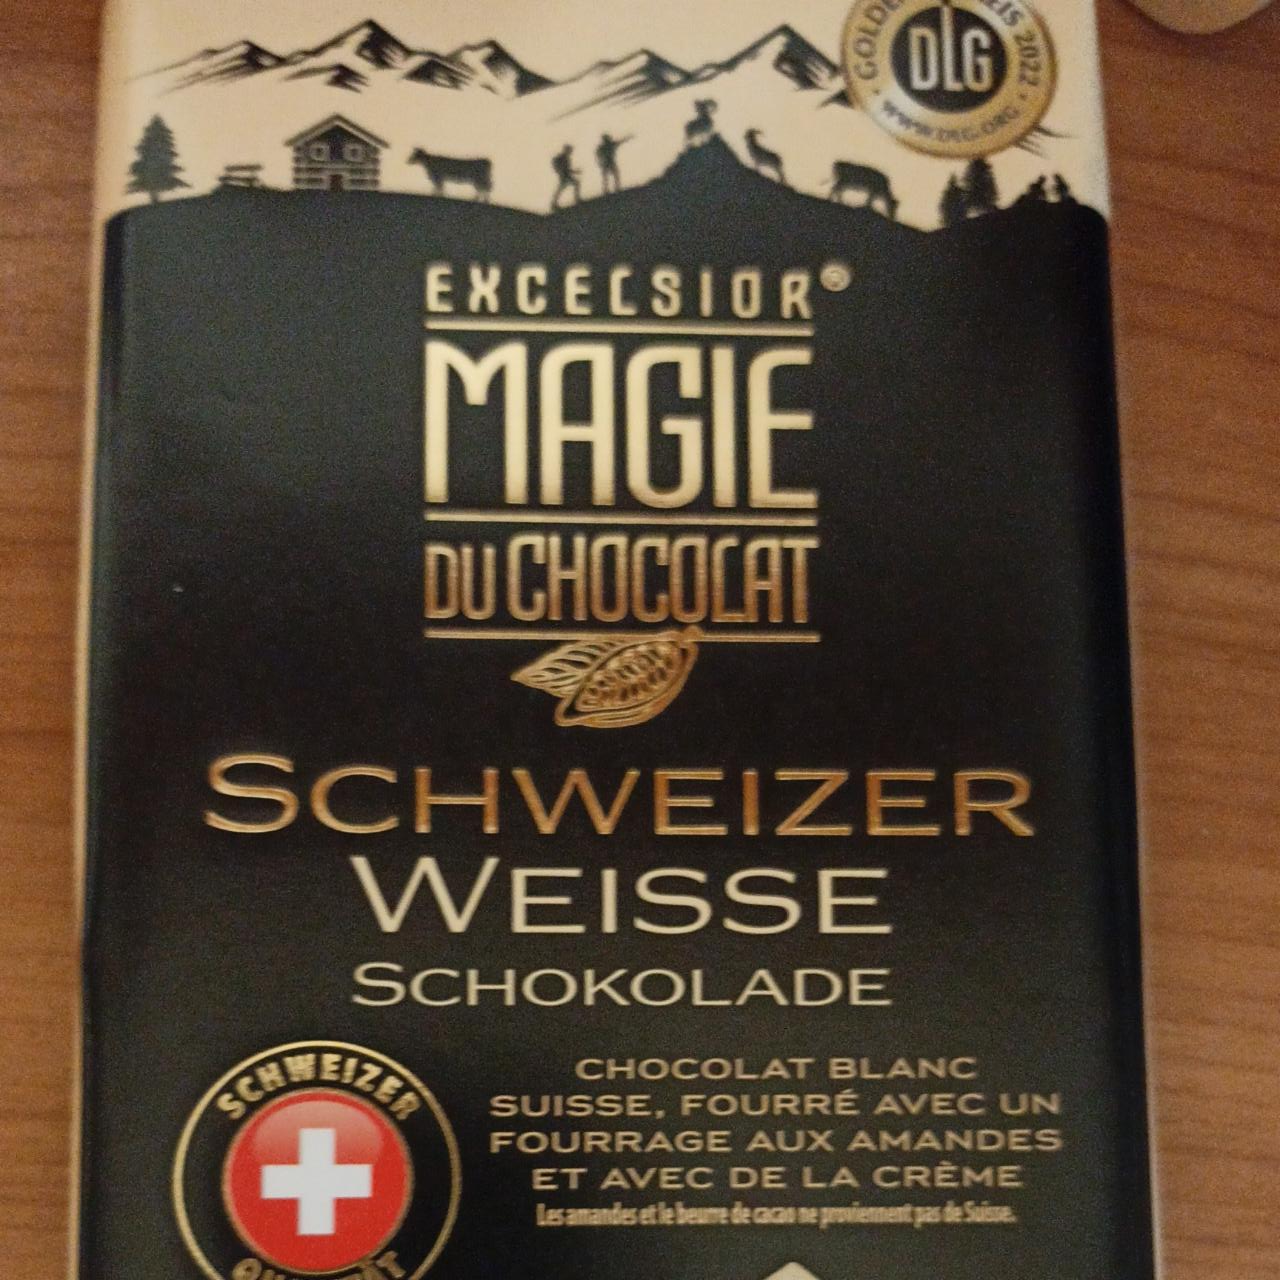 Fotografie - Schweizer weisse schokolade Excelsior Magie du chocolat